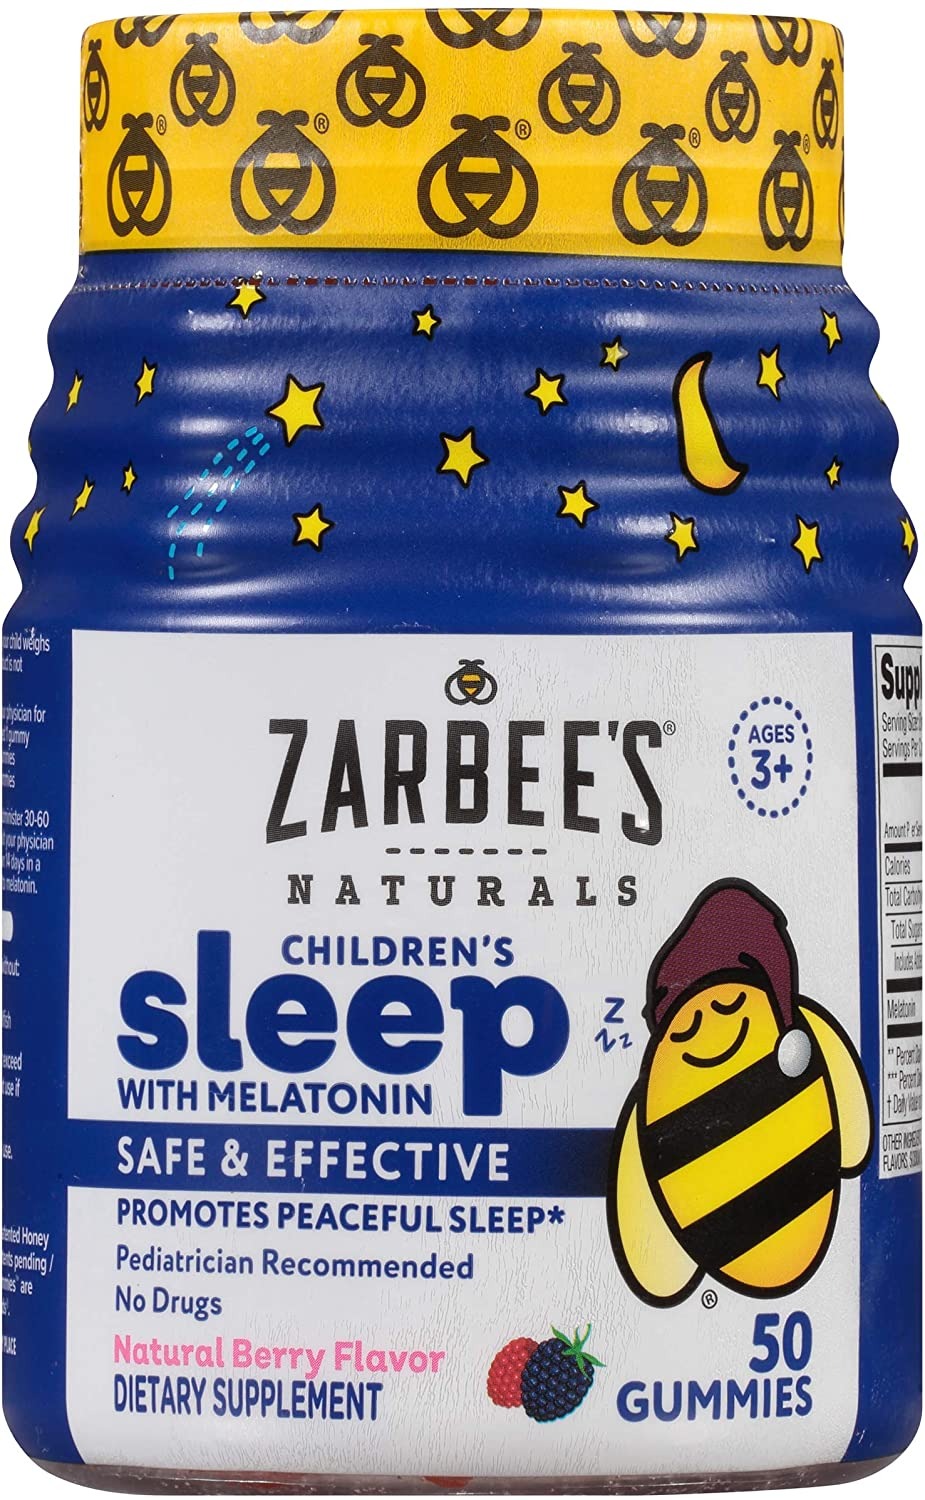 Zarbee's Naturals Children's Sleep